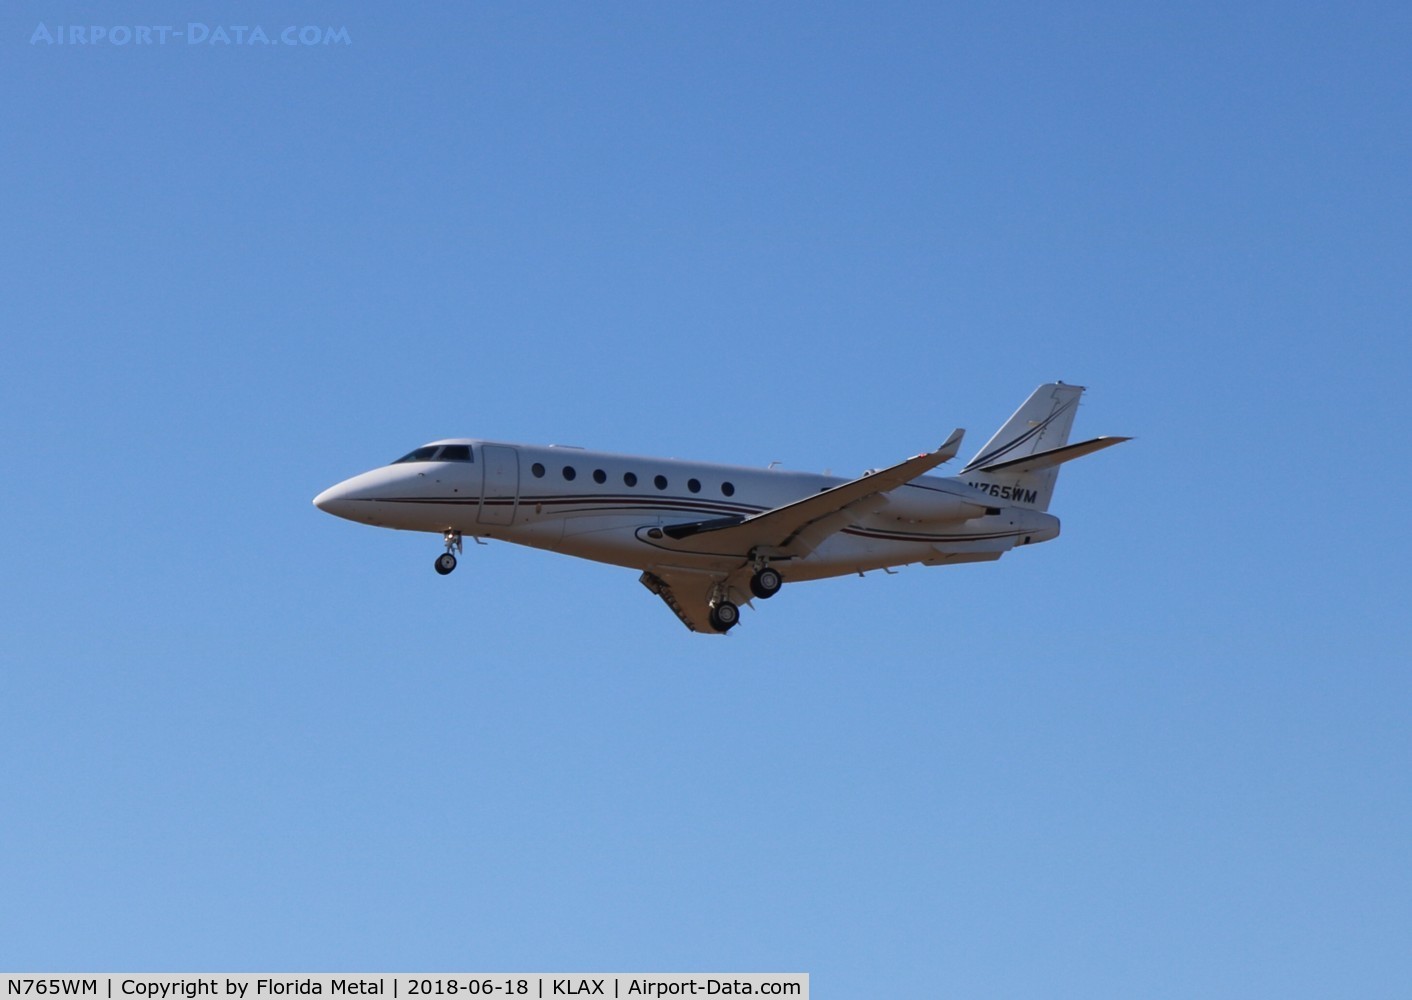 N765WM, 2005 Israel Aircraft Industries Gulfstream 200 C/N 115, LAX spotting 2018